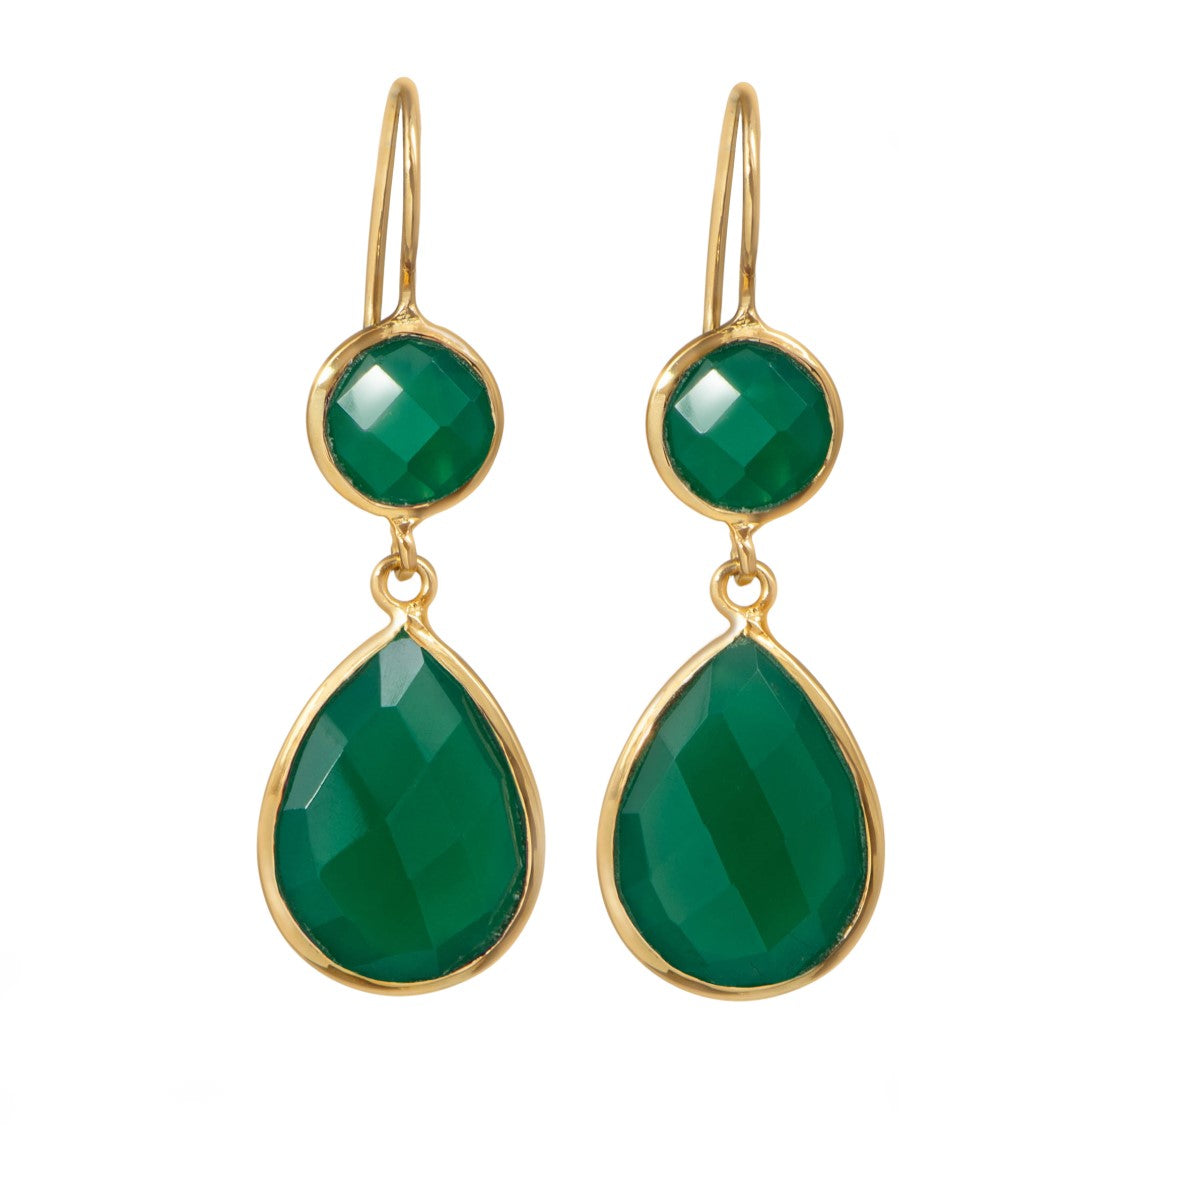 Green Onyx Gemstone Two Stone Earrings in Gold Plated Sterling Silver - Teardrop